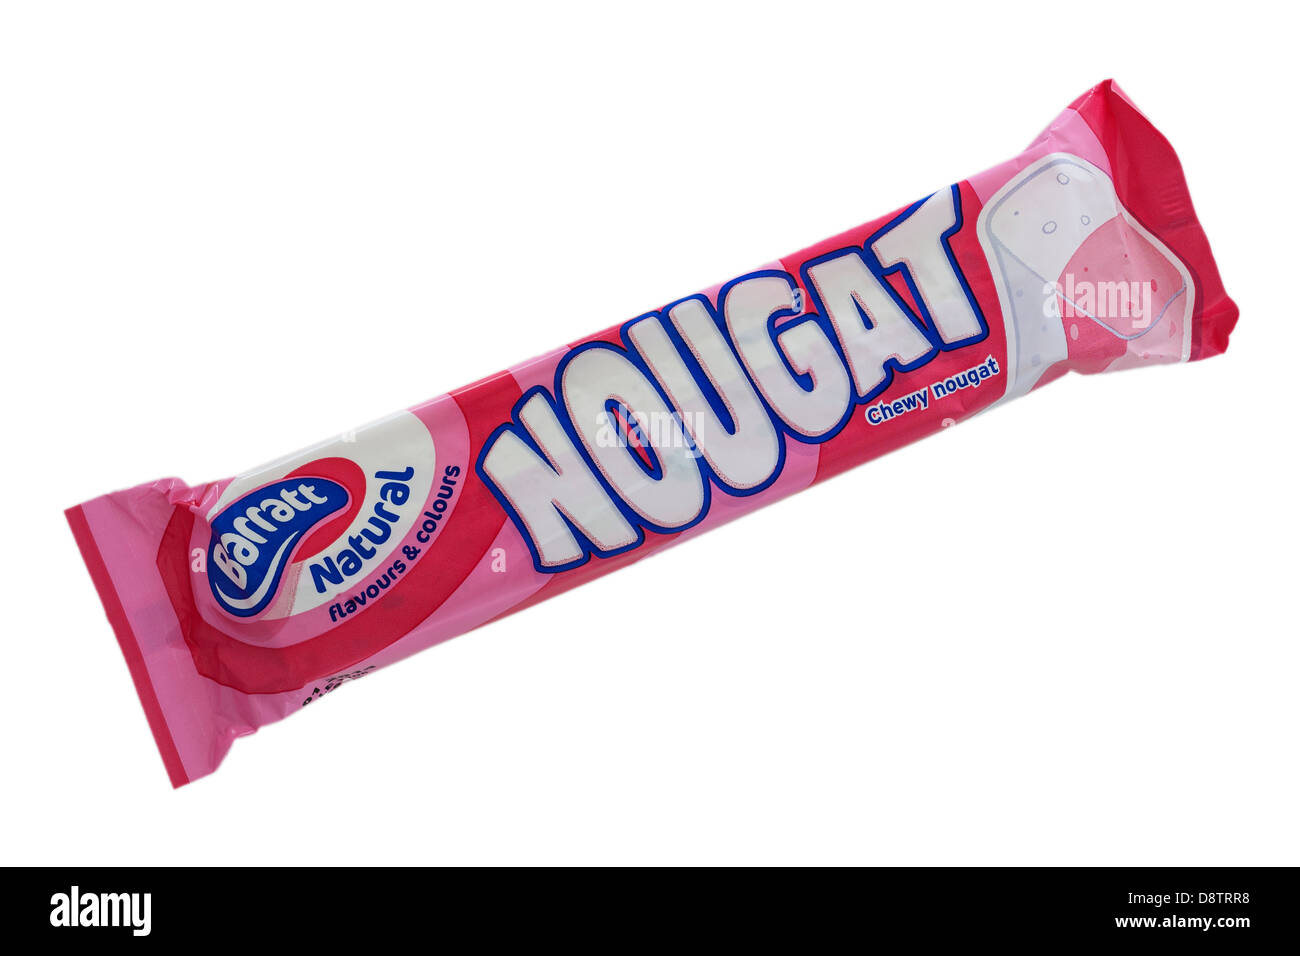 Un Barratt torrone naturale candy bar su sfondo bianco Foto Stock